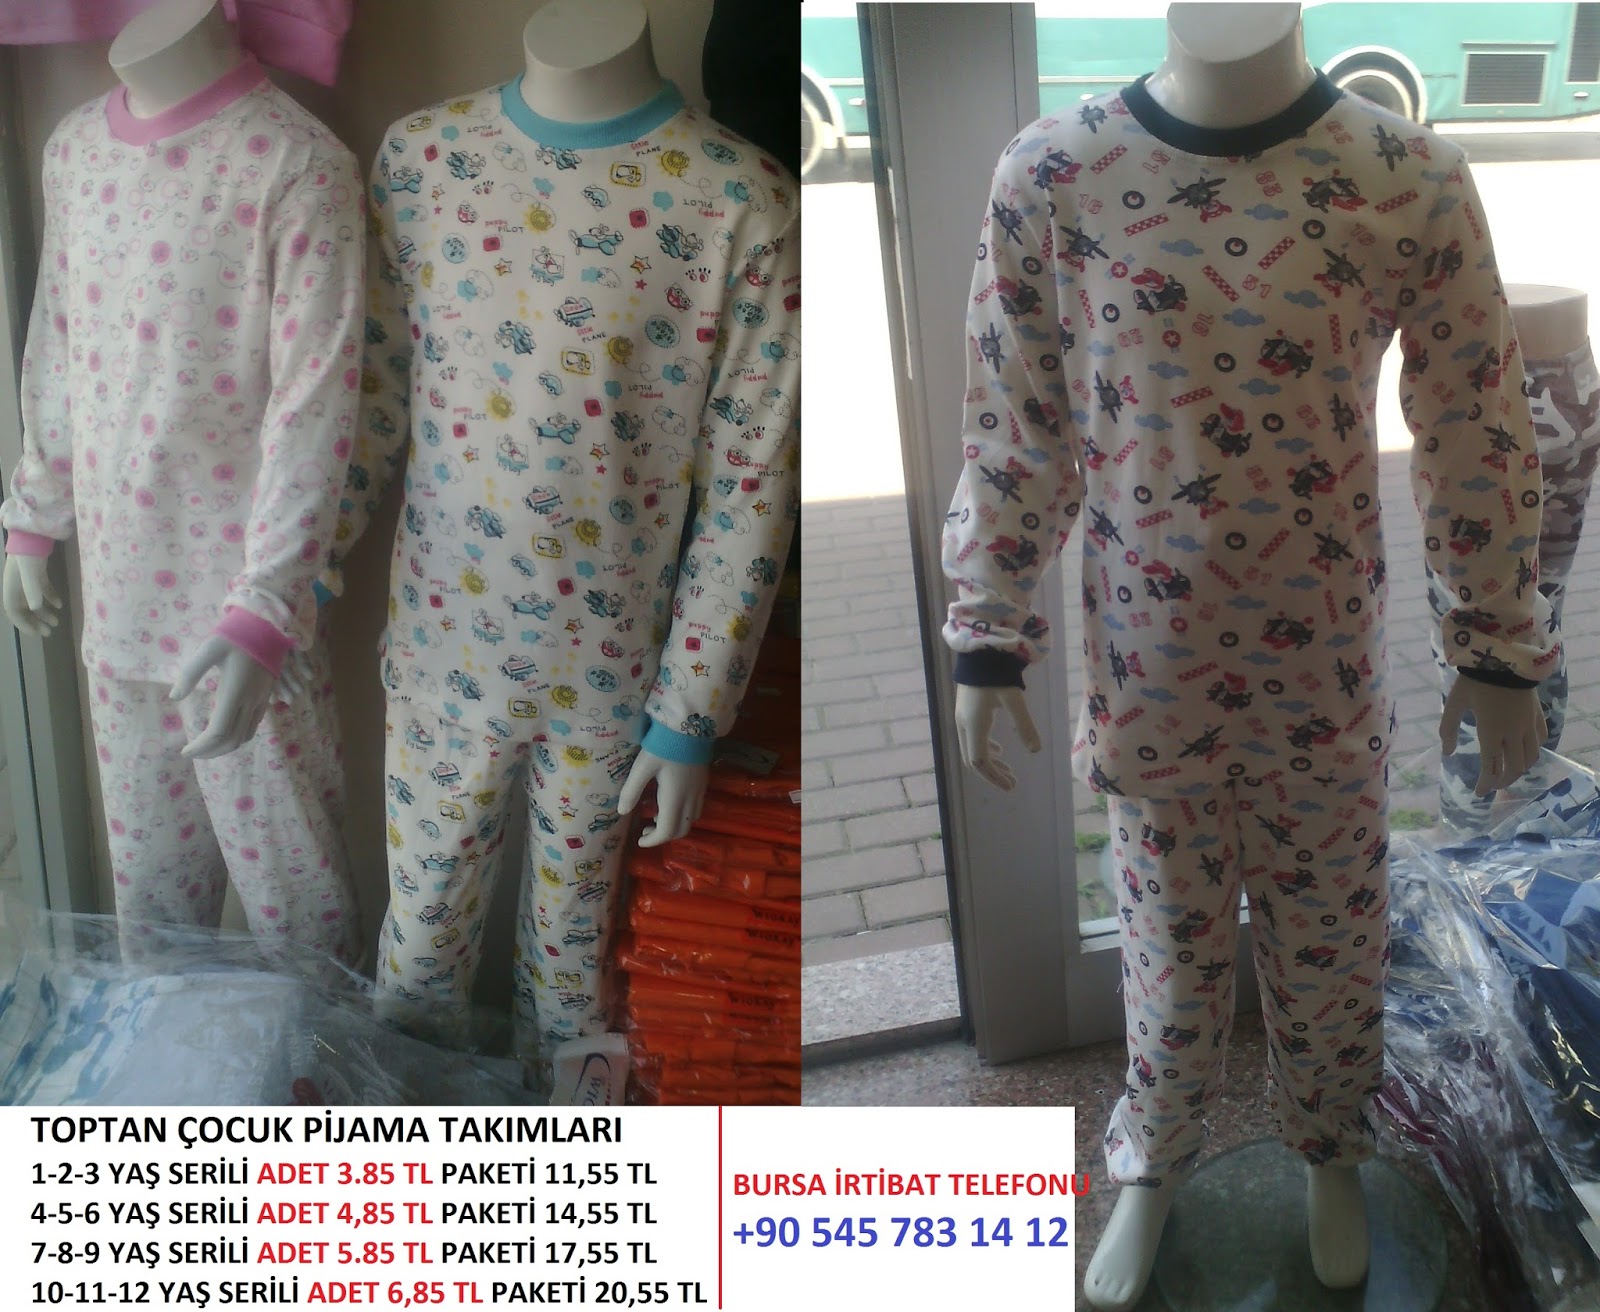 çocuk pijama takımı imalatı yapan yerler toptan TekstiL ürünleri Toptan